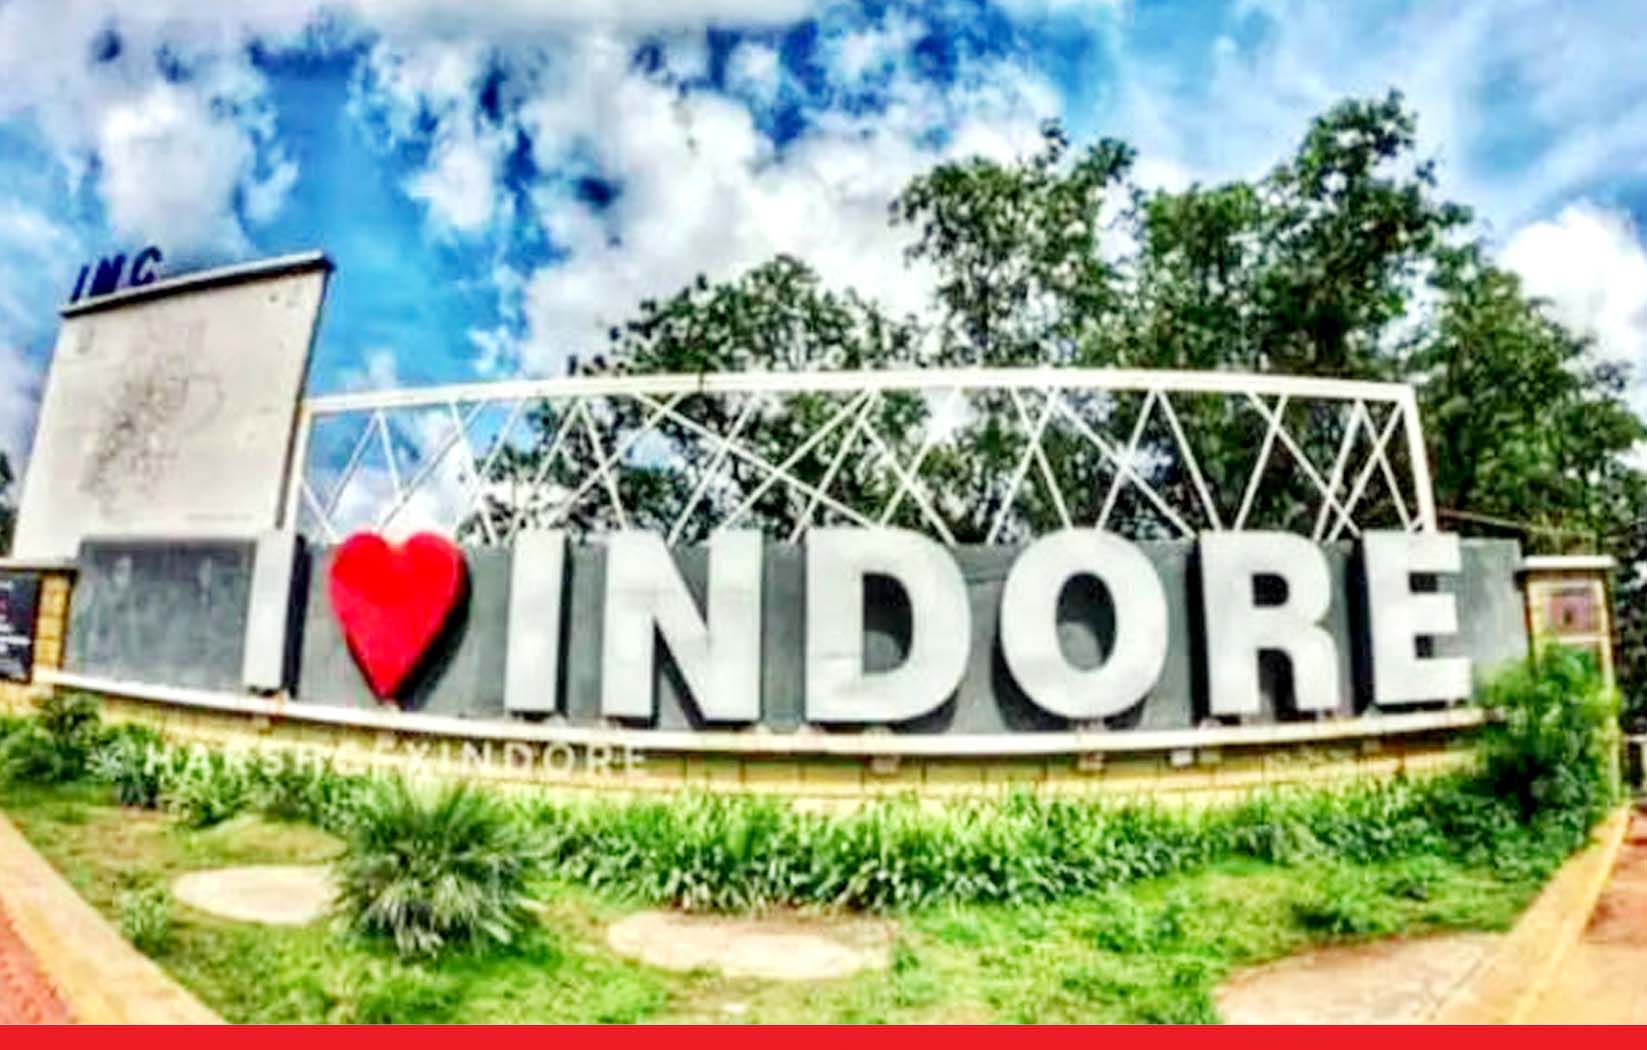 इंदौर ने लगाया पंच: लगातार पांचवीं बार देश का सबसे स्वच्छ शहर बना इंदौर, इस बार मिलेंगे तीन पुरस्कार